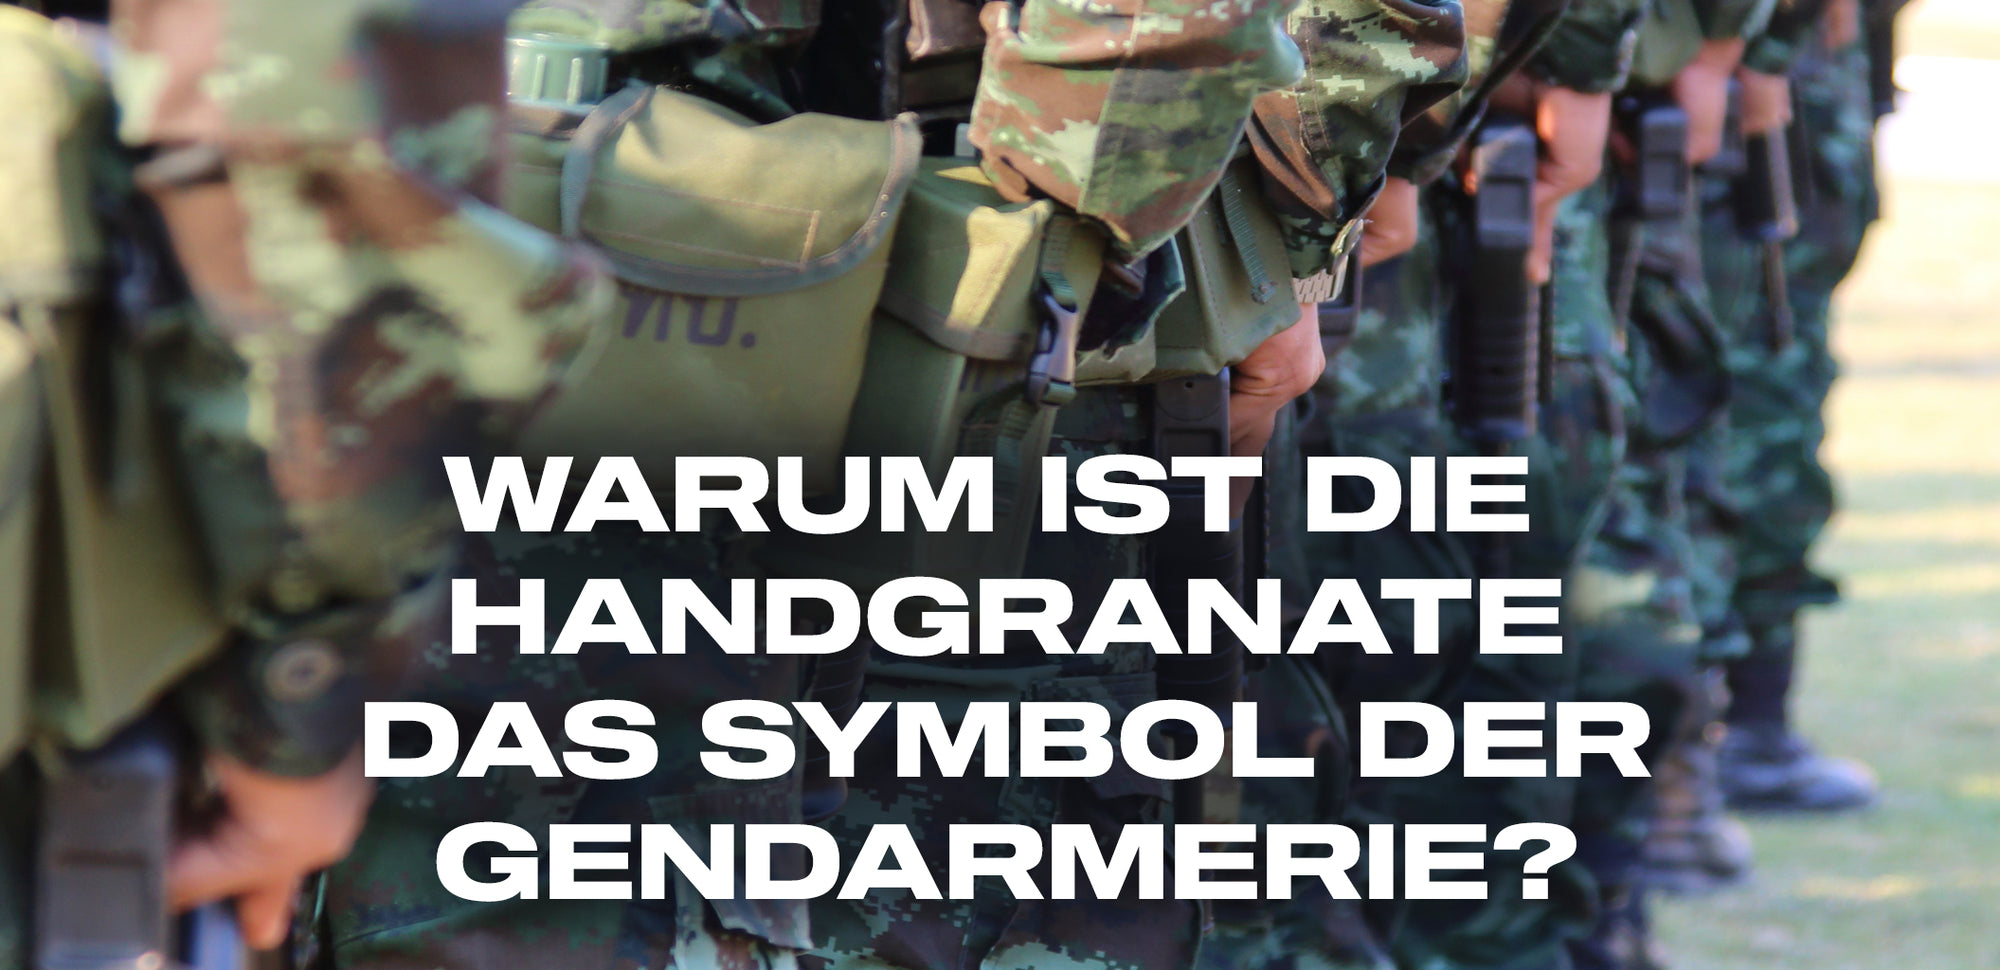 warum ist die handgranate das symbol der gendarmerie